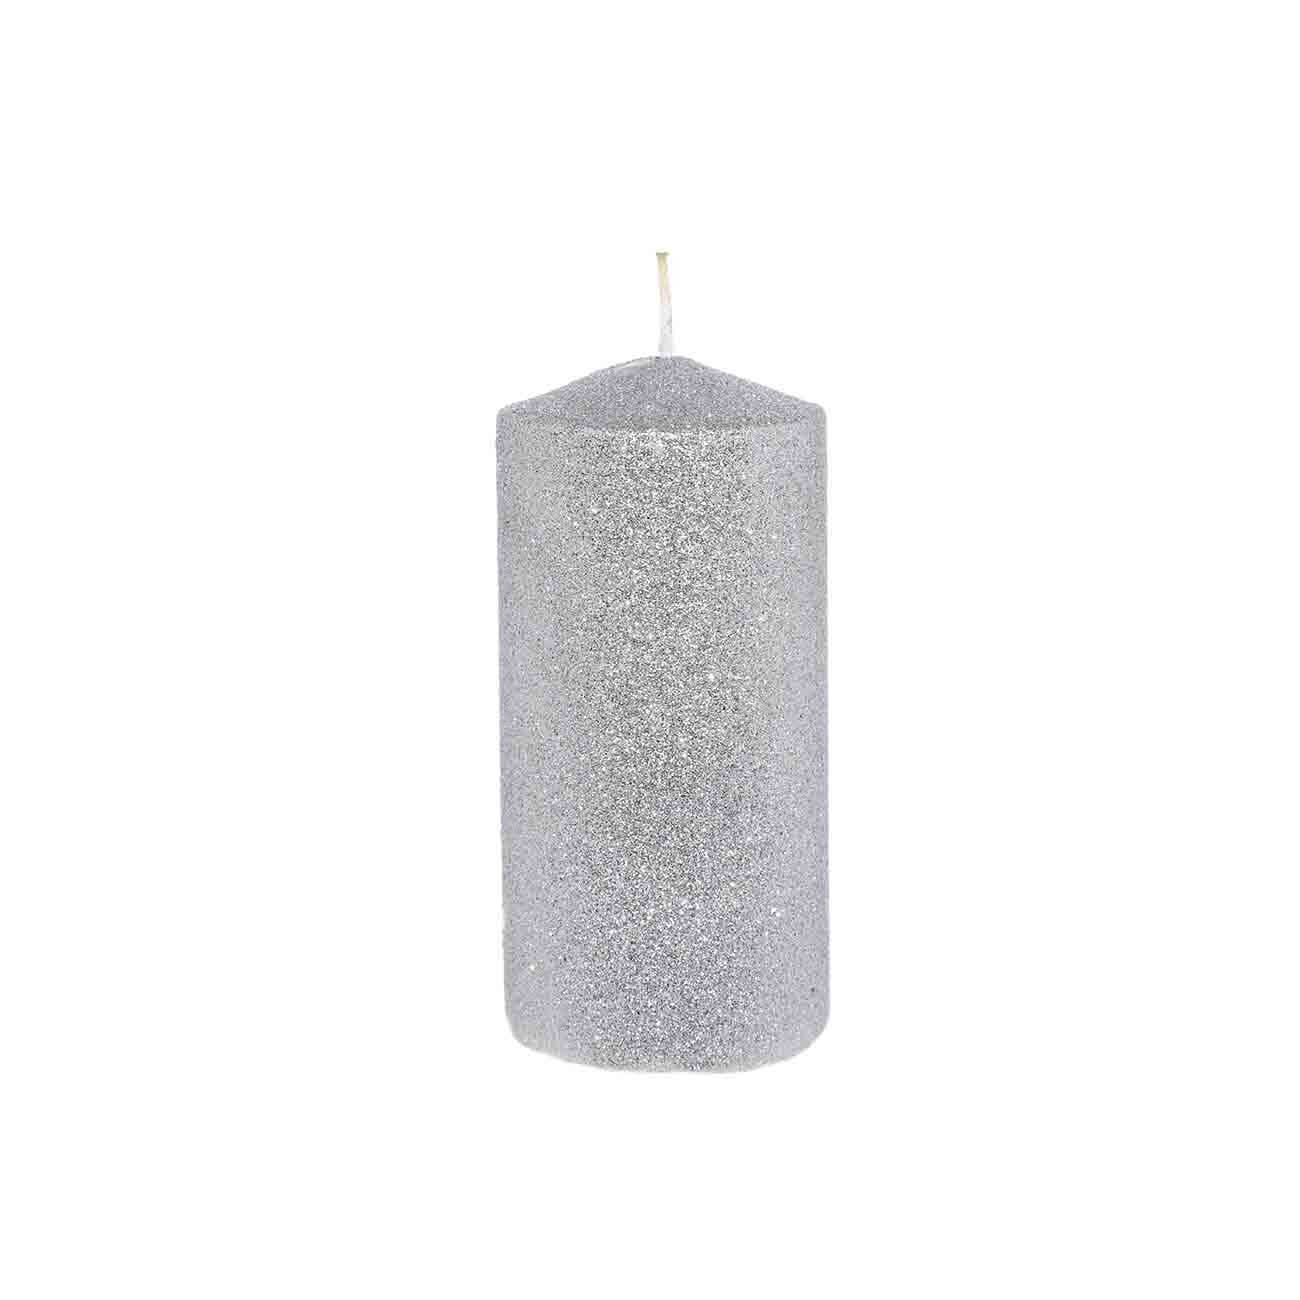 Свеча, 12 см, цилиндрическая, с блестками, серебристая, Metallic glow свеча 25 см тонкая белая metallic glow